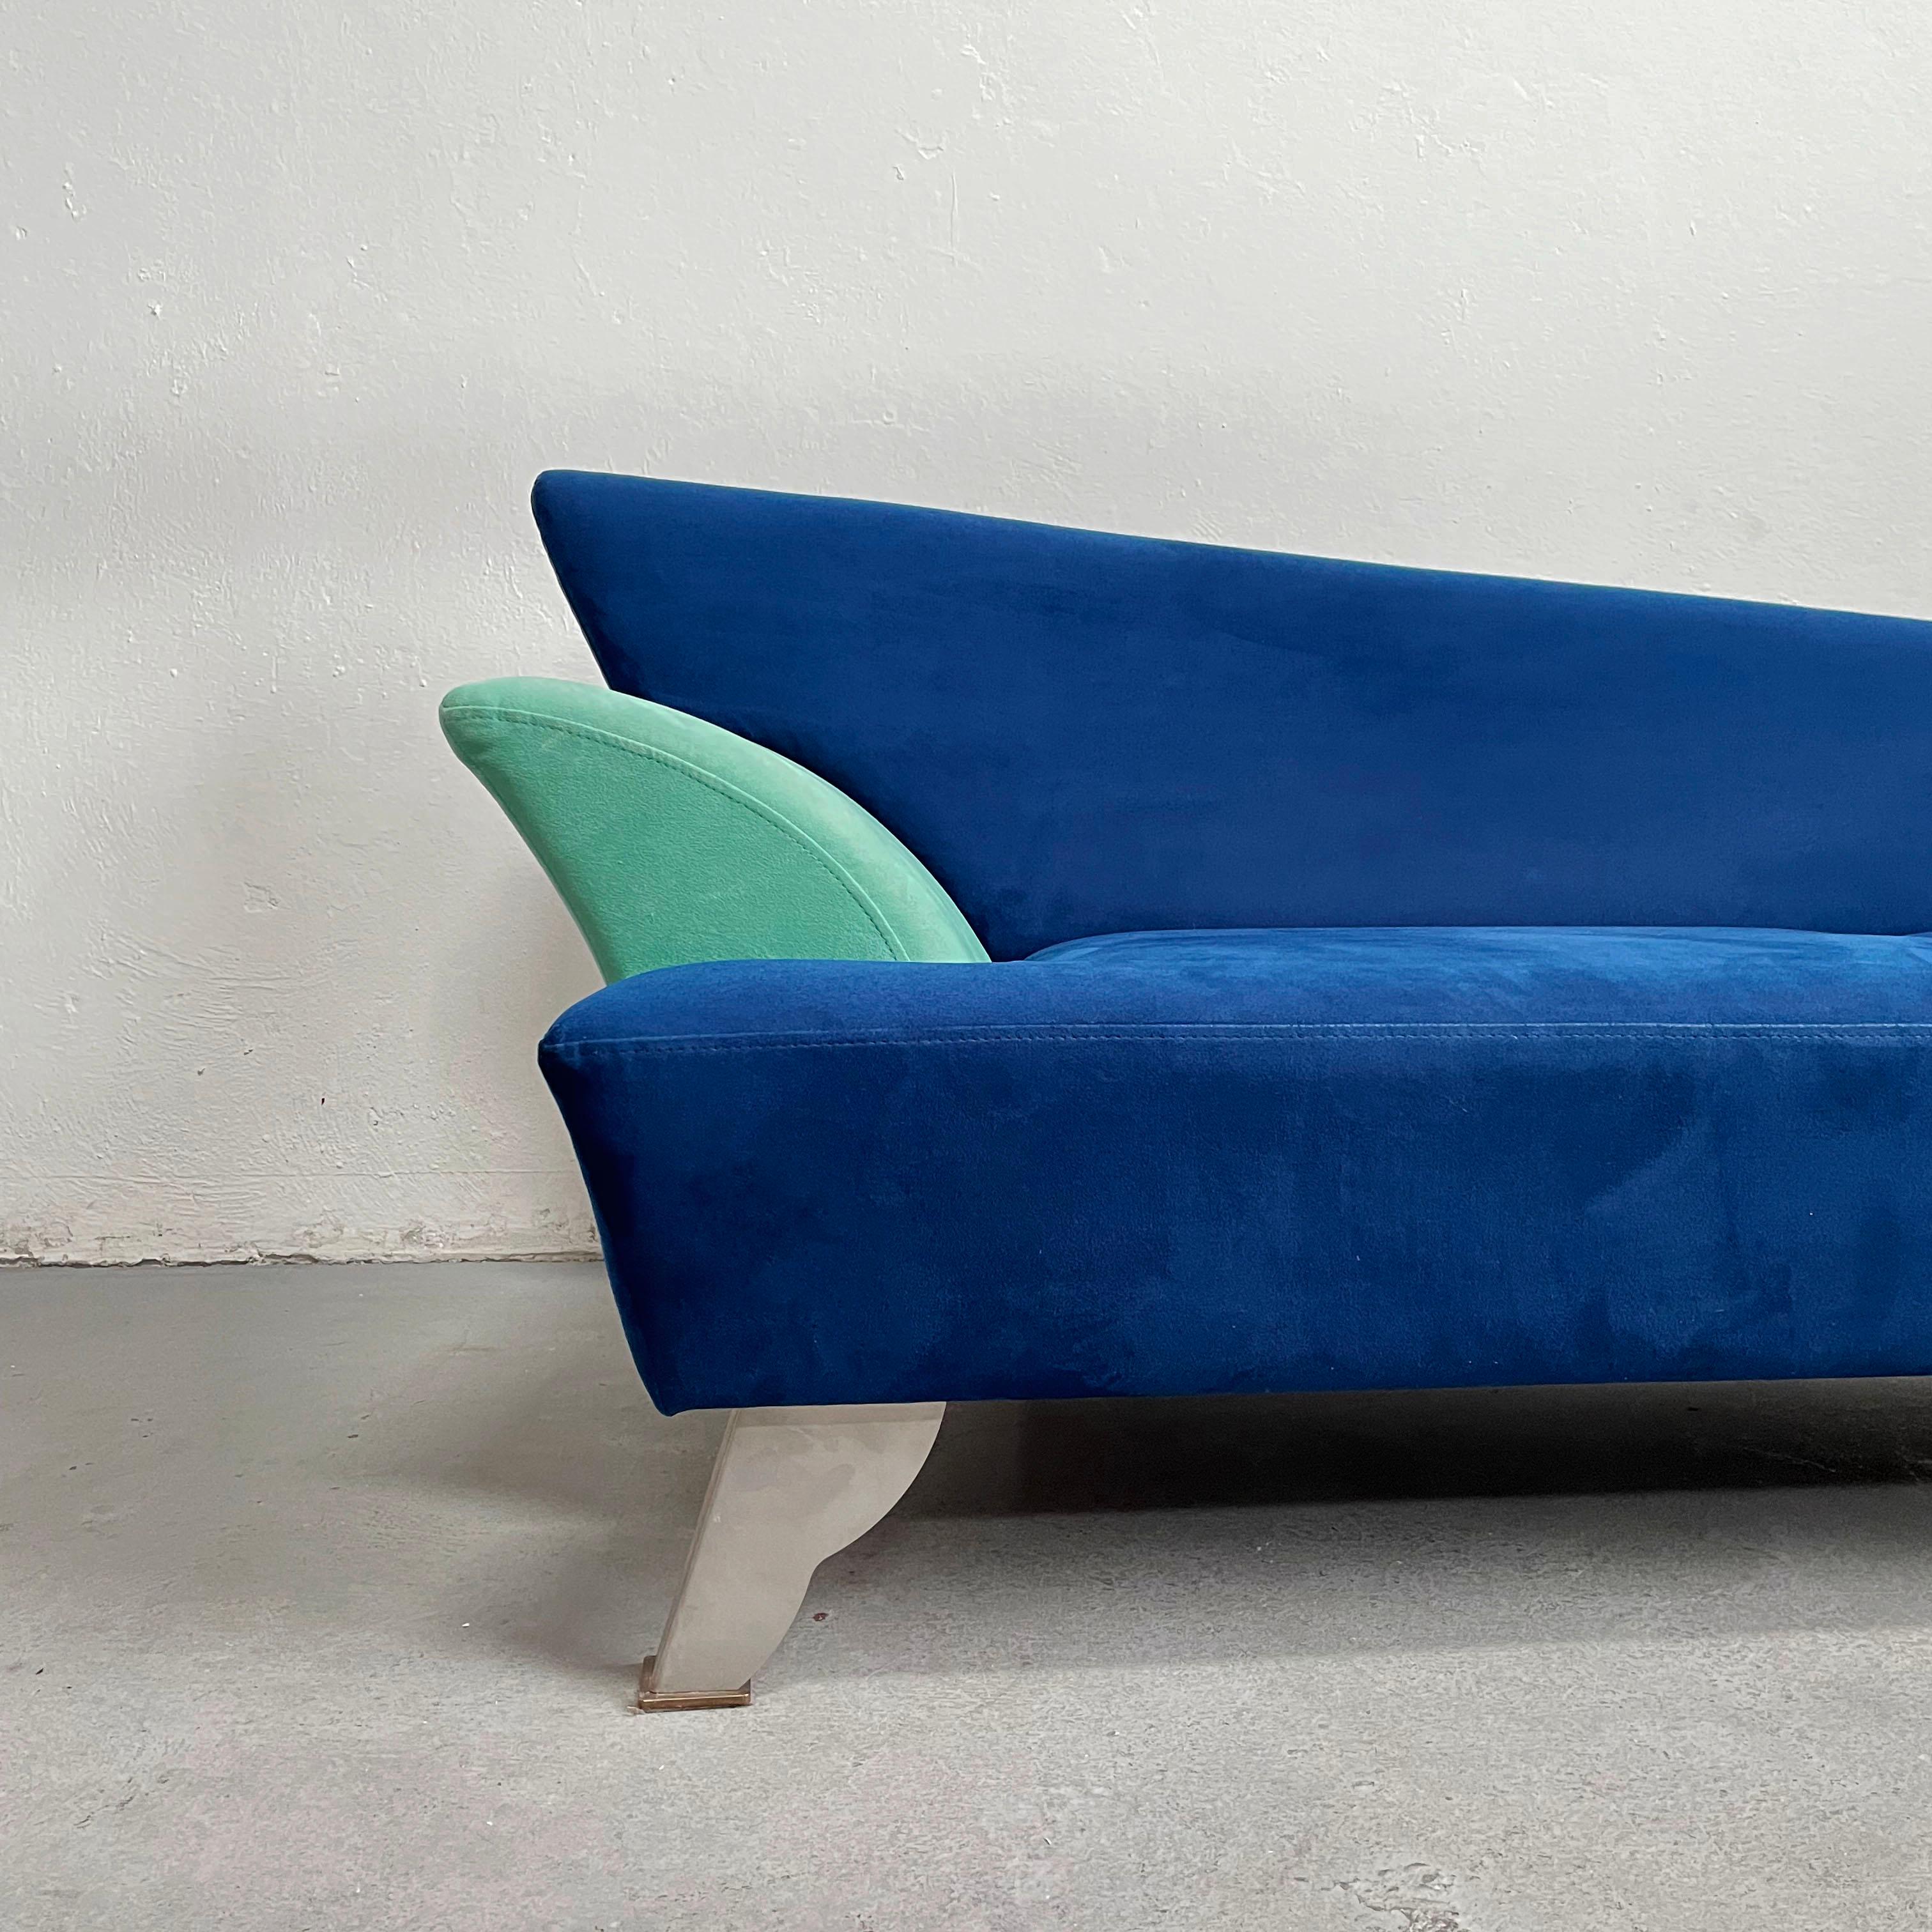 Postmodernes, skulpturales Daybed-Sofa mit elegant geformter, asymmetrischer Sitzfläche und Metallbeinen im Stil der 80er Jahre. Das Sofa ist mit blauem Alcantarastoff gepolstert

Hergestellt in den 1980er Jahren, der Ära des Memphis-Designs 

Das